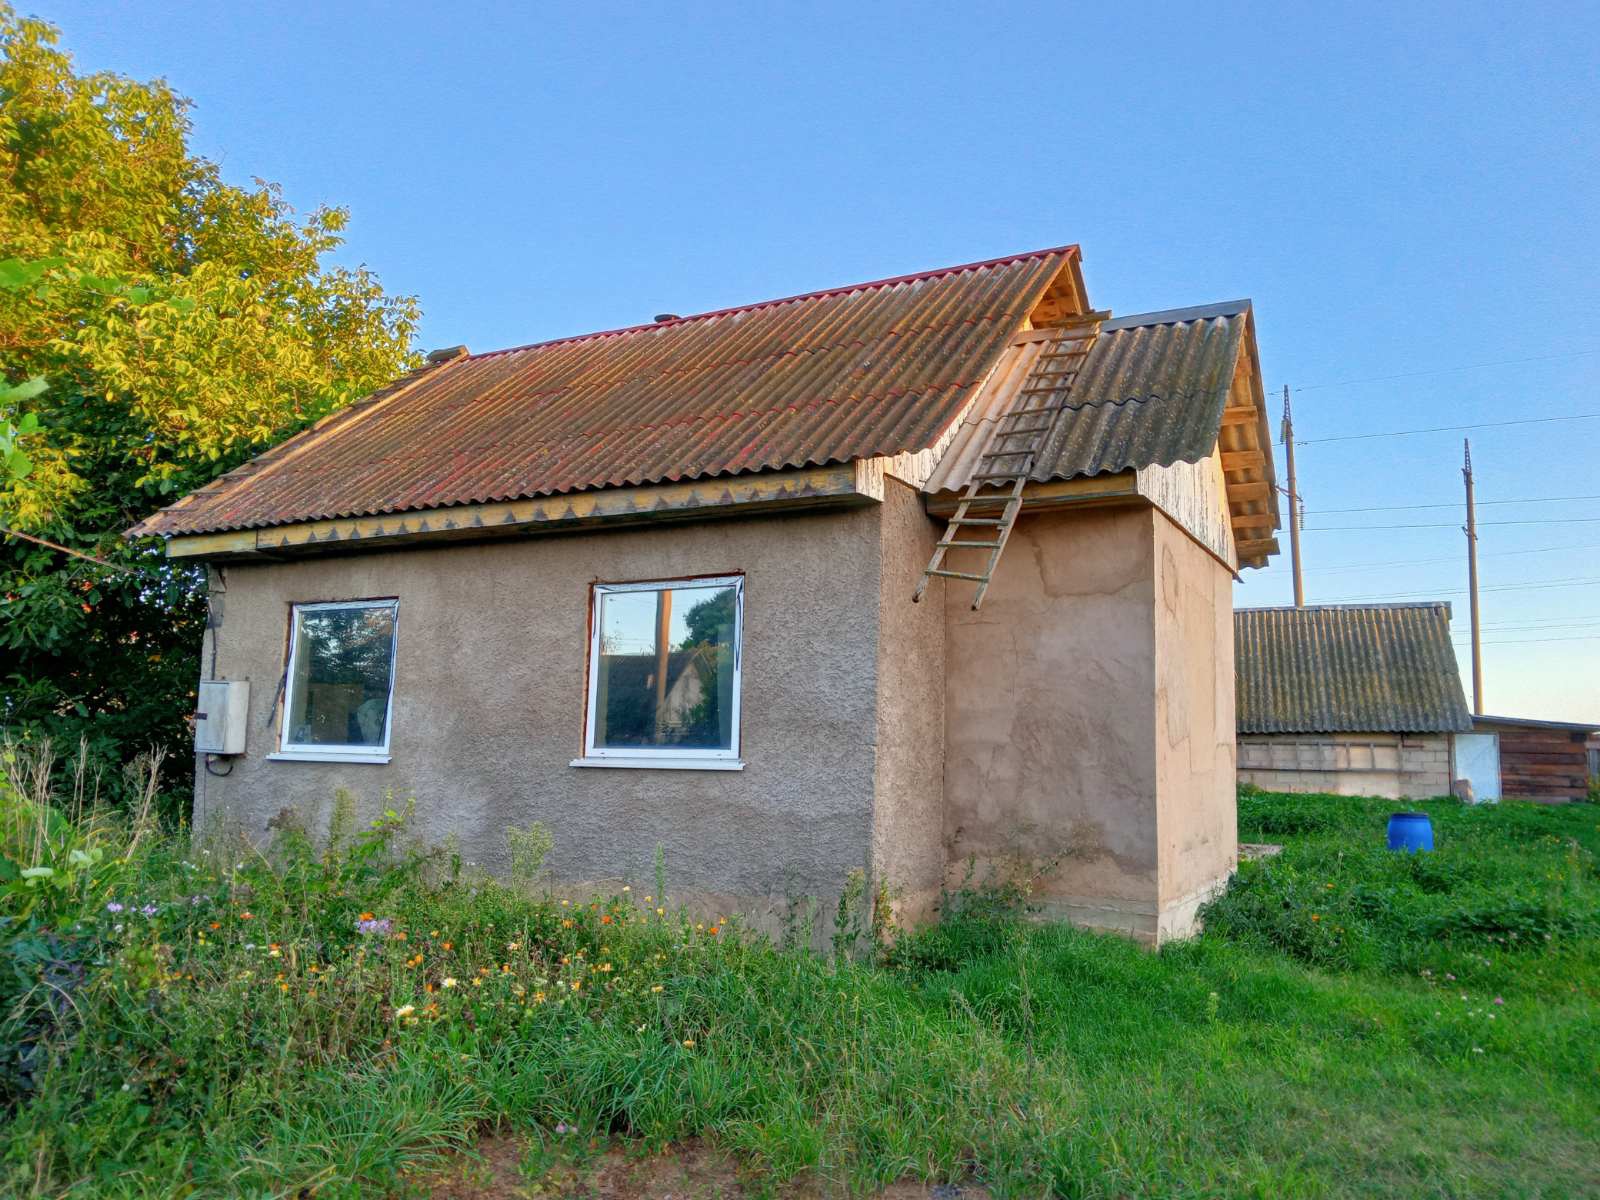 Продаётся дом в деревне Радково (10 км от Солигорска) - фотография